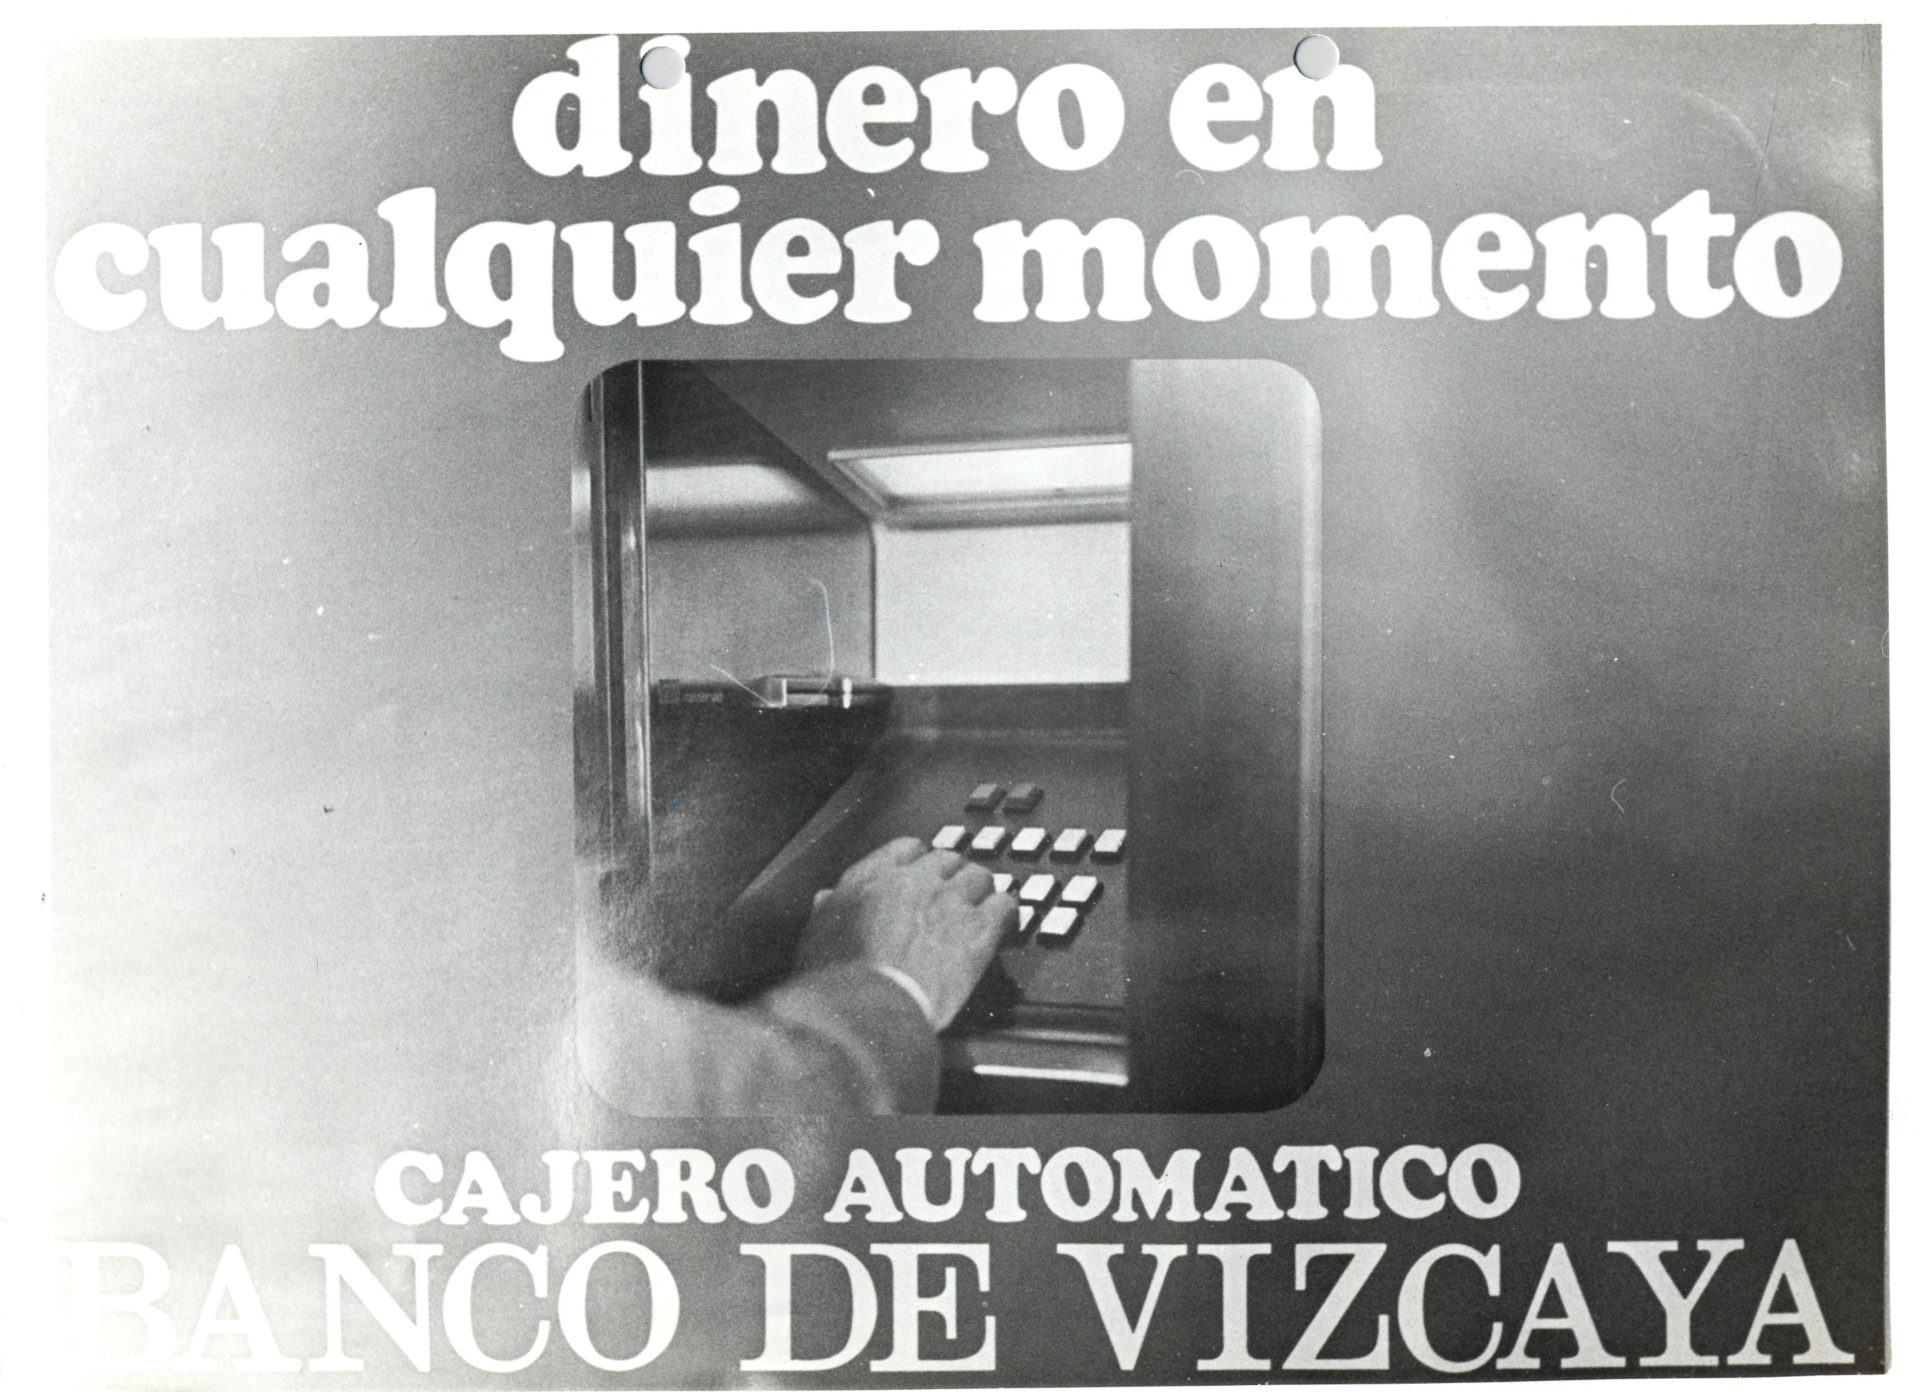 Así anunciaba el Banco de Vizcaya la llegada de los cajeros automáticos a la sociedad: 